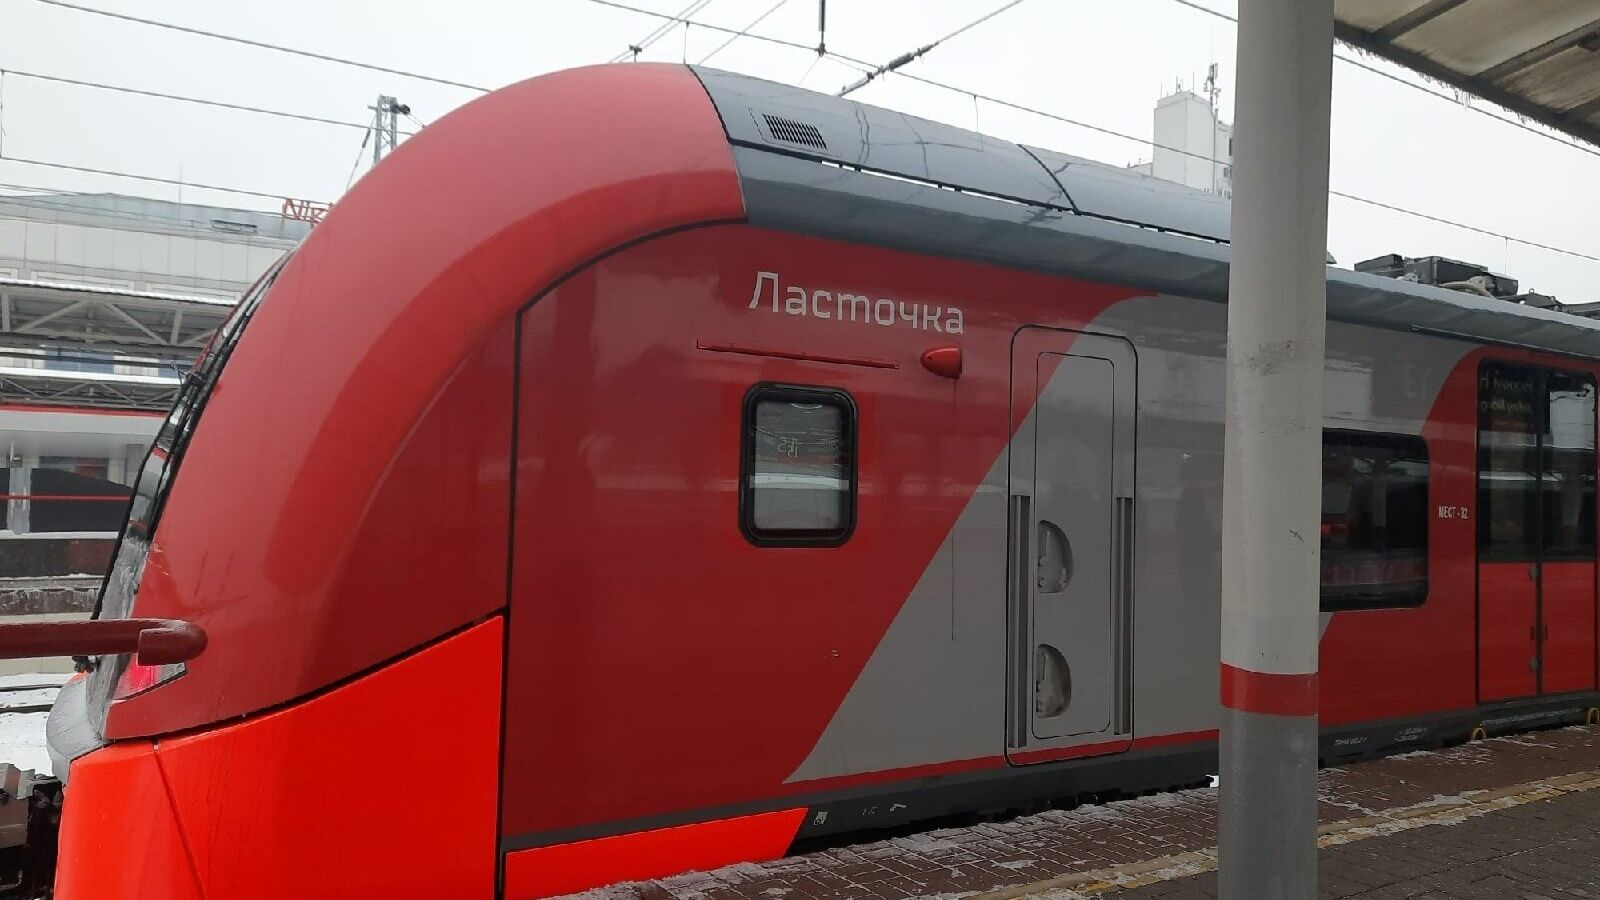 Ж/д билеты из Нижнего Новгорода в Москву будут продавать за 45 суток